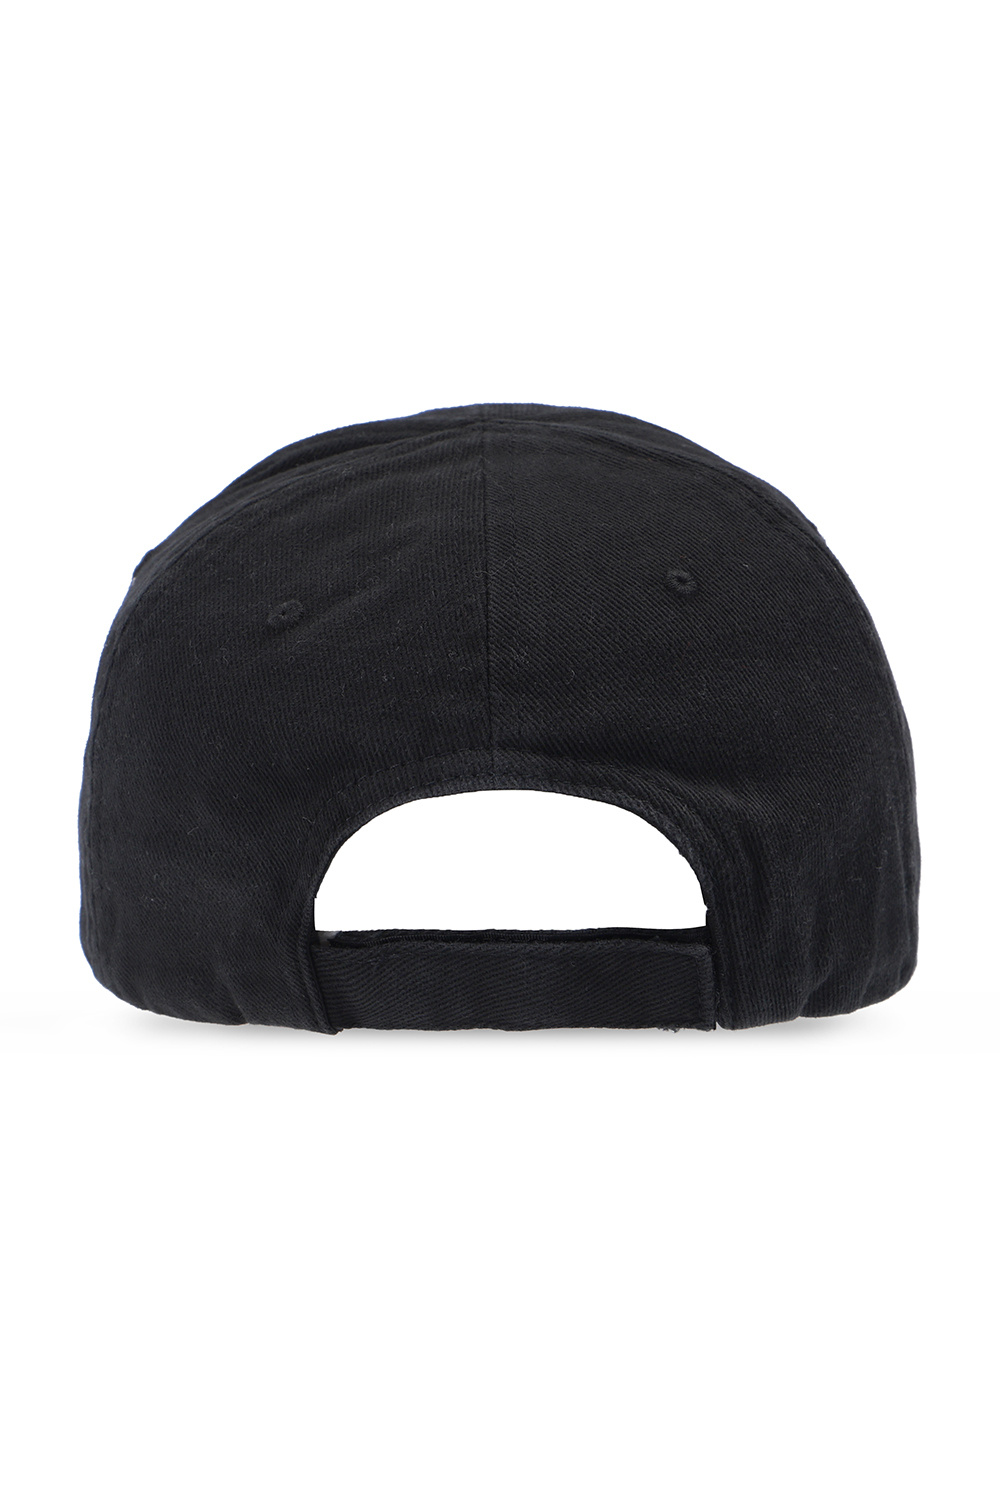 IetpShops | Men's Accessories | Balenciaga Baseball cap with logo | buy calvin  klein logo patch cap